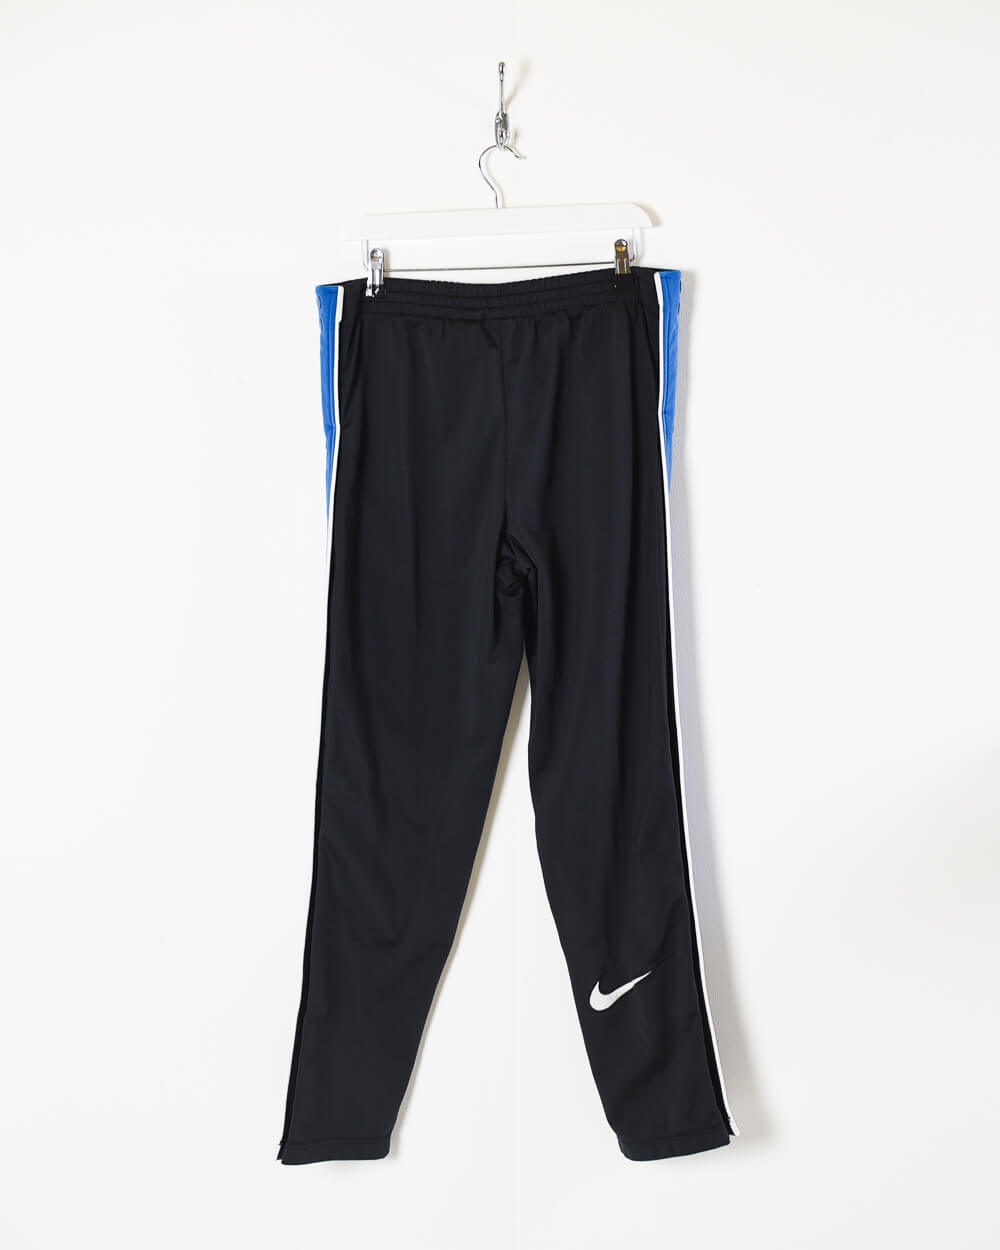 Nike Sportswear Black Tag Tear-away Popper Pants, Women's Fashion,  Activewear on Carousell